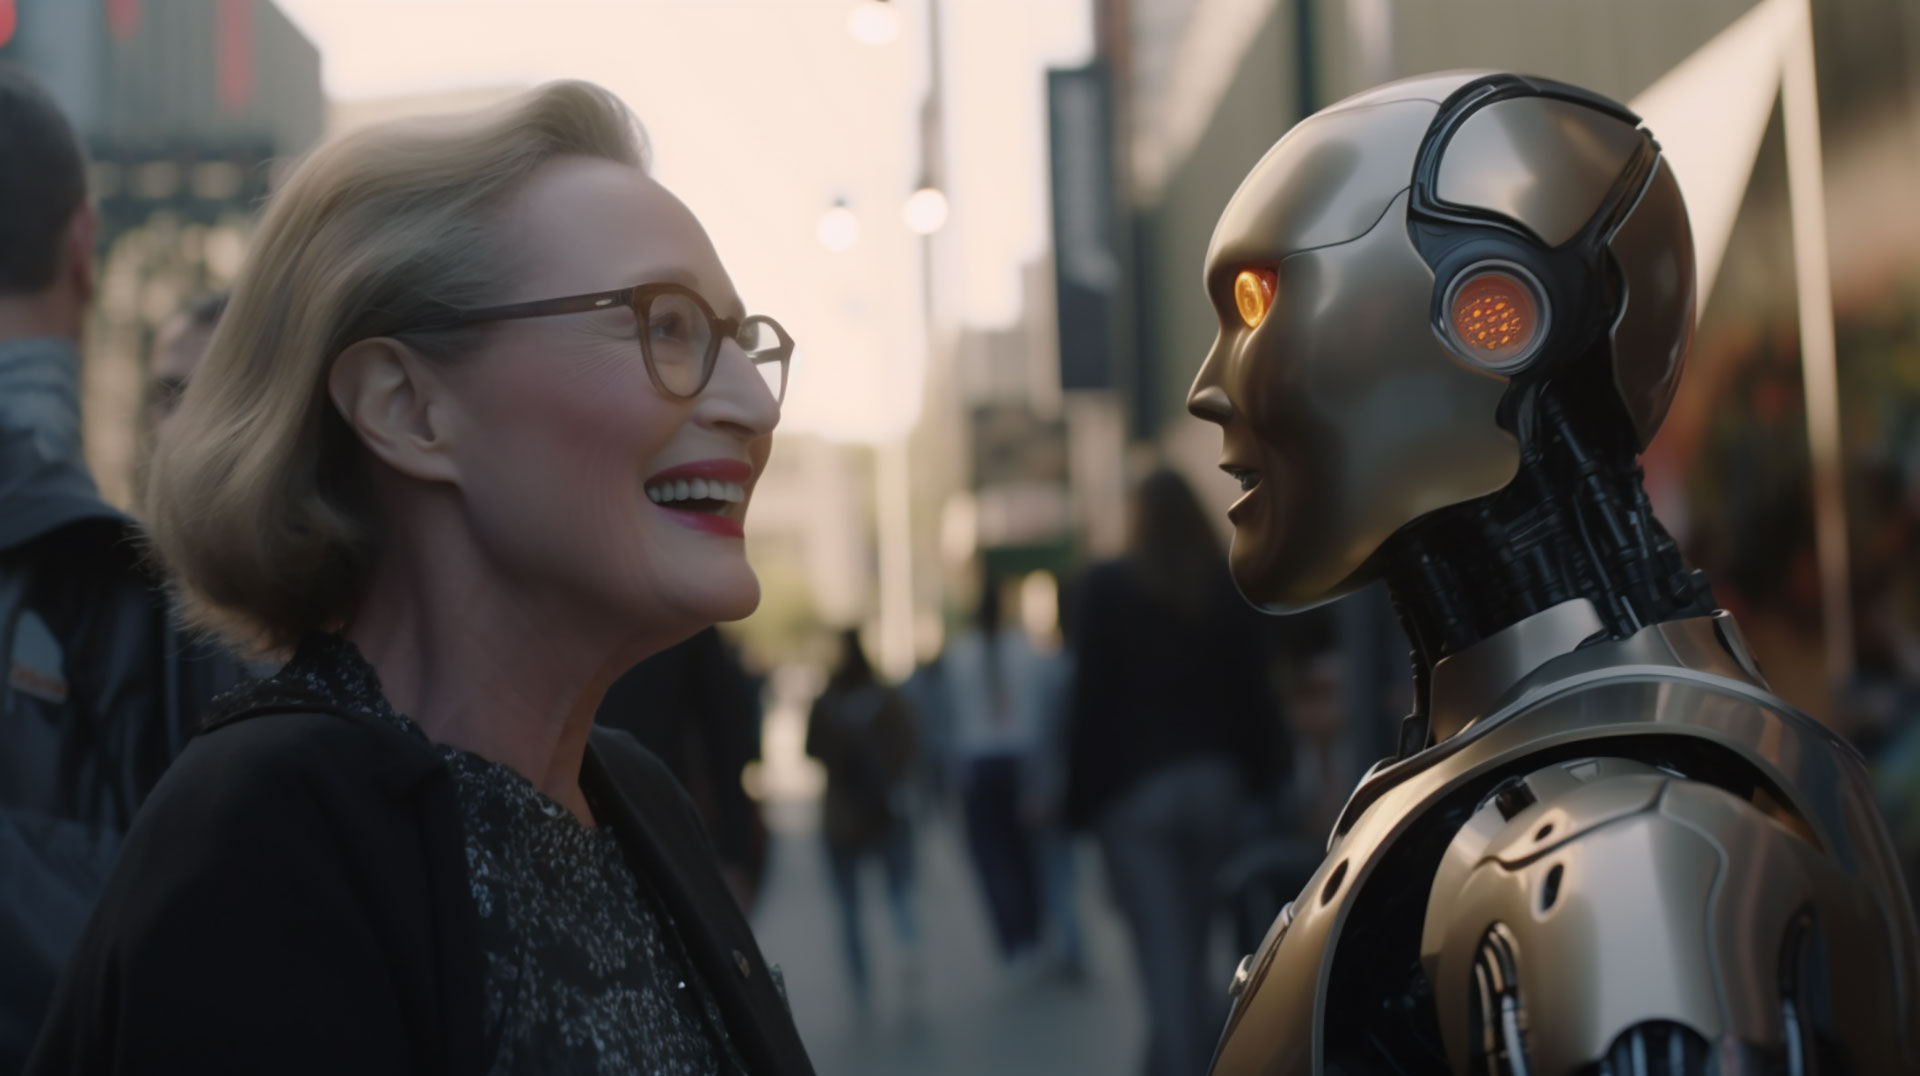 IA está transformando la industria cinematográfica y mejorando la experiencia del espectador. (Imagen Ilustrativa)